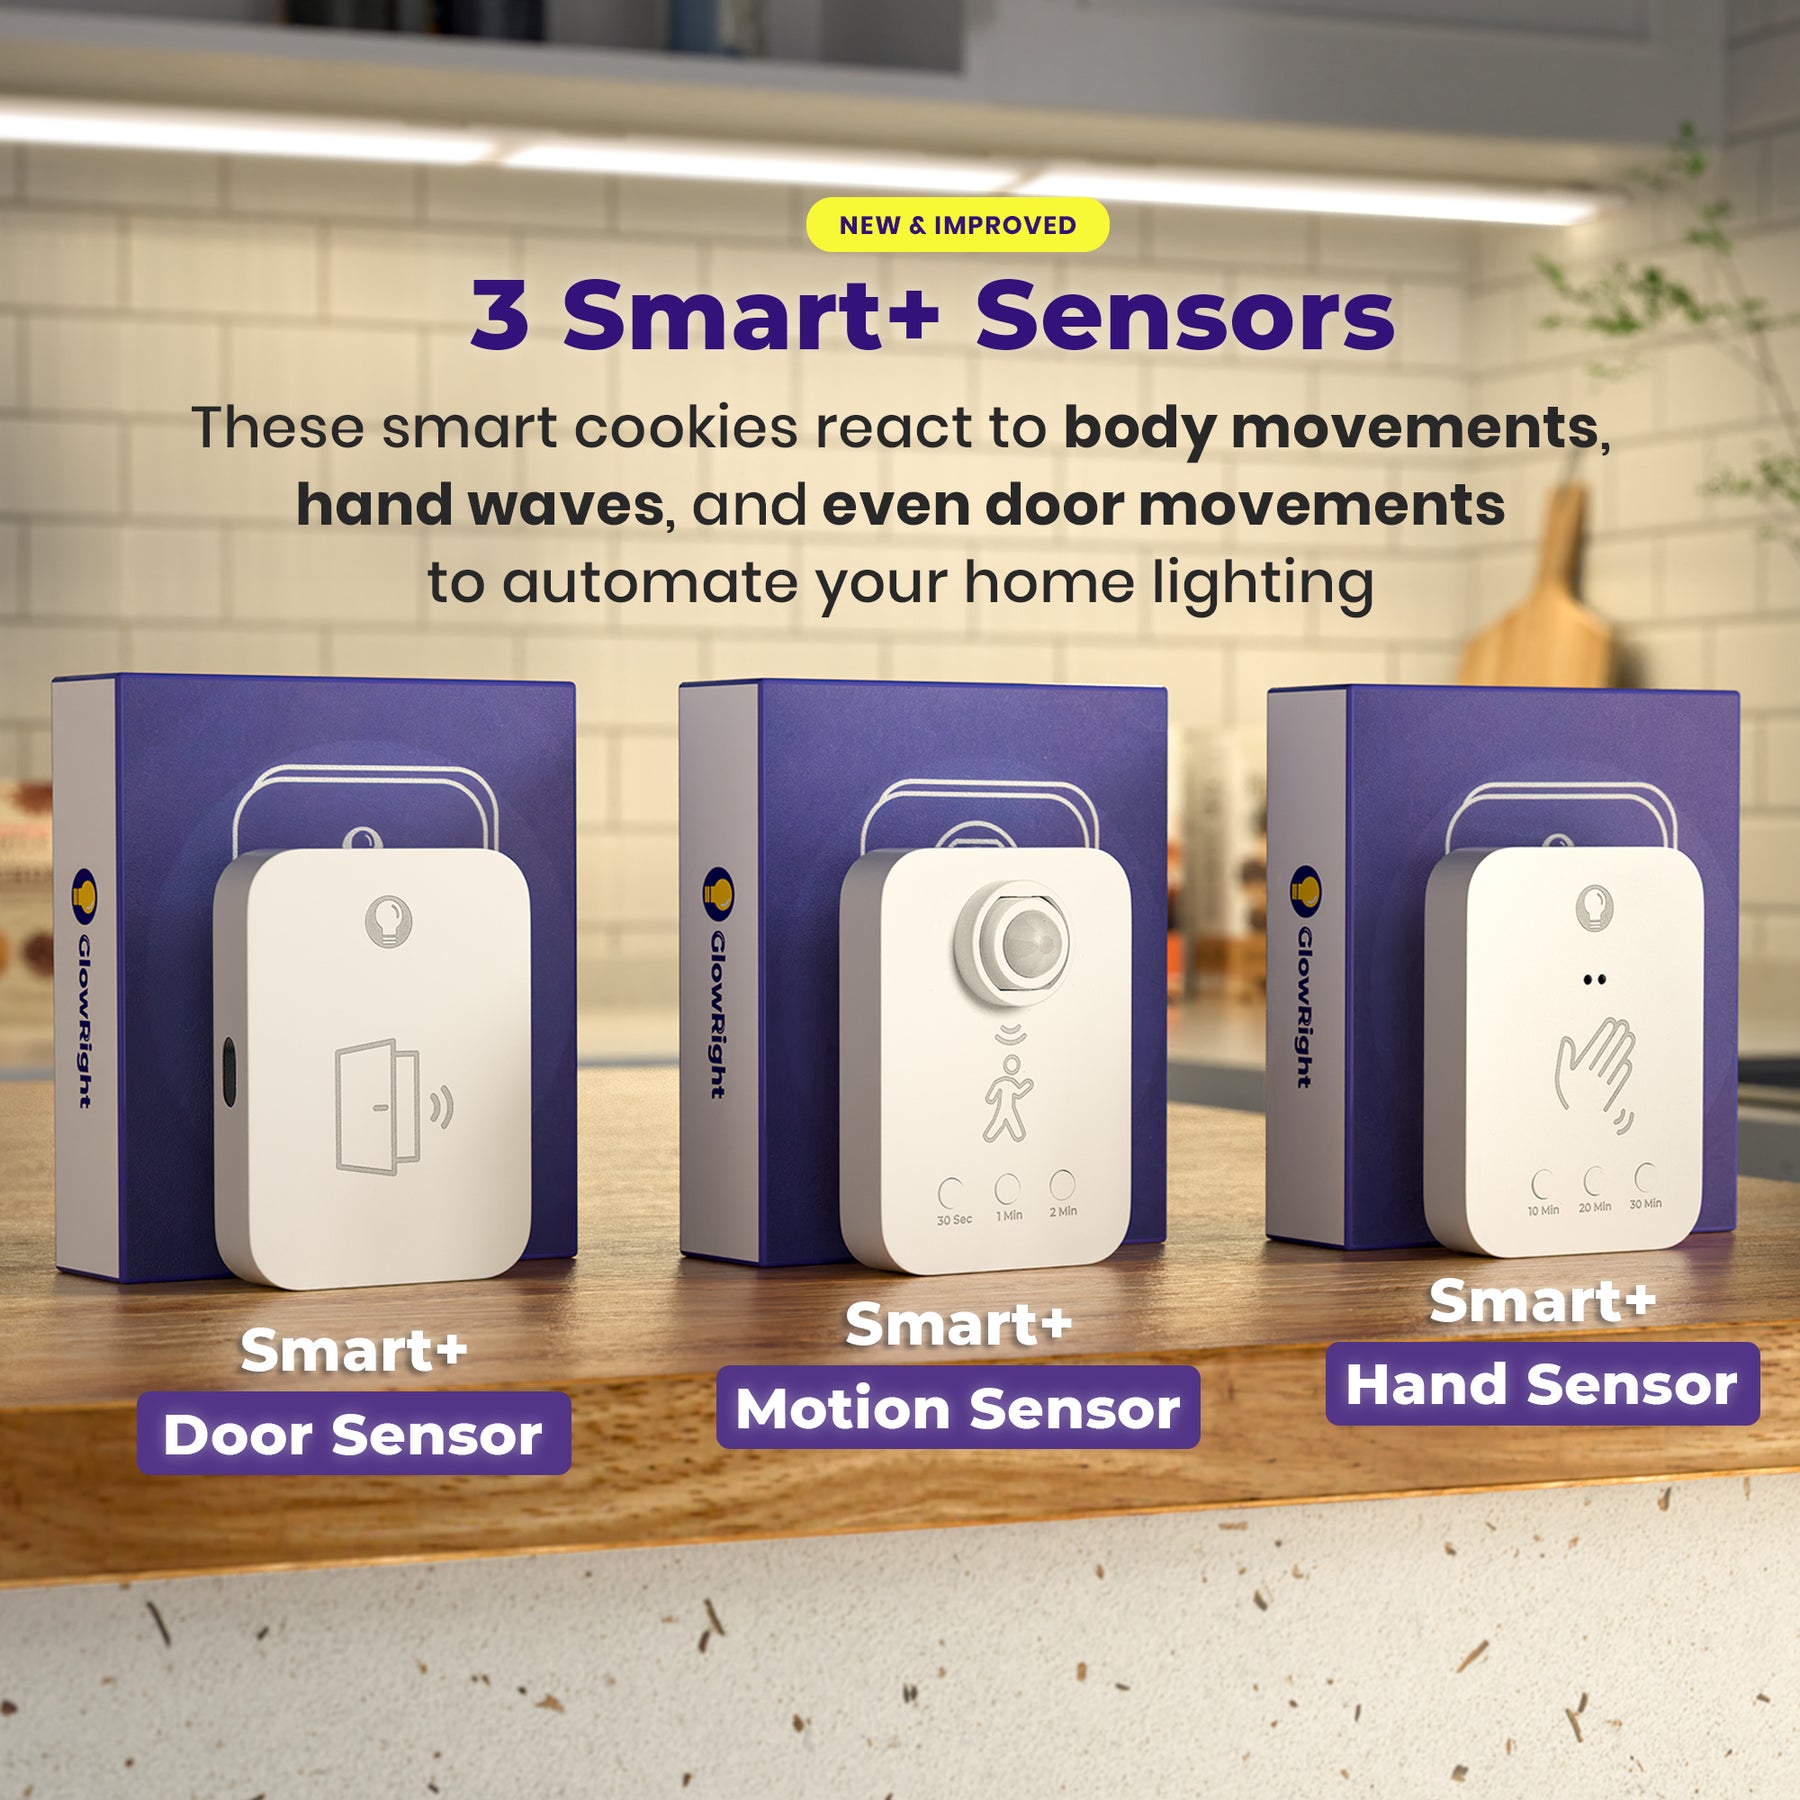 Smart+ Hand Sensor